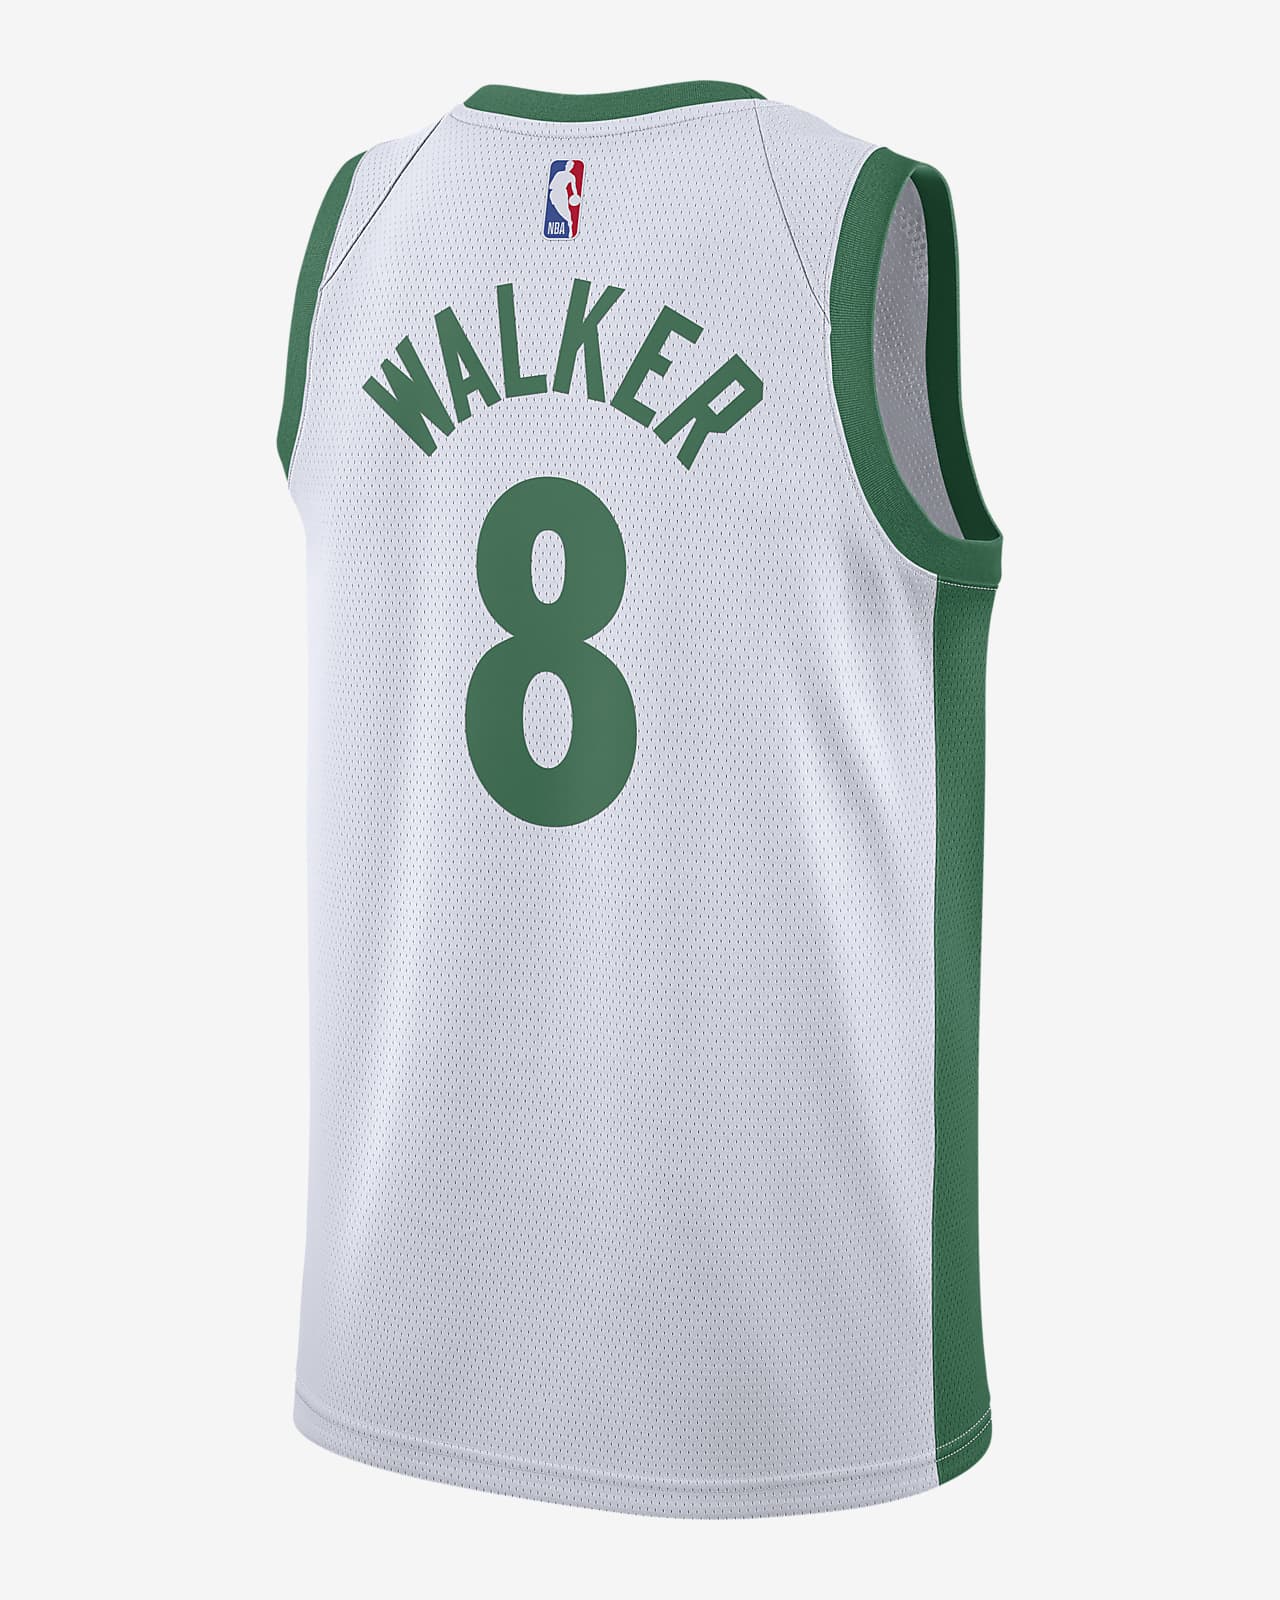 Kemba Walker Jersey / Men S Celtics 8 Kemba Walker Icon Green Nba ...